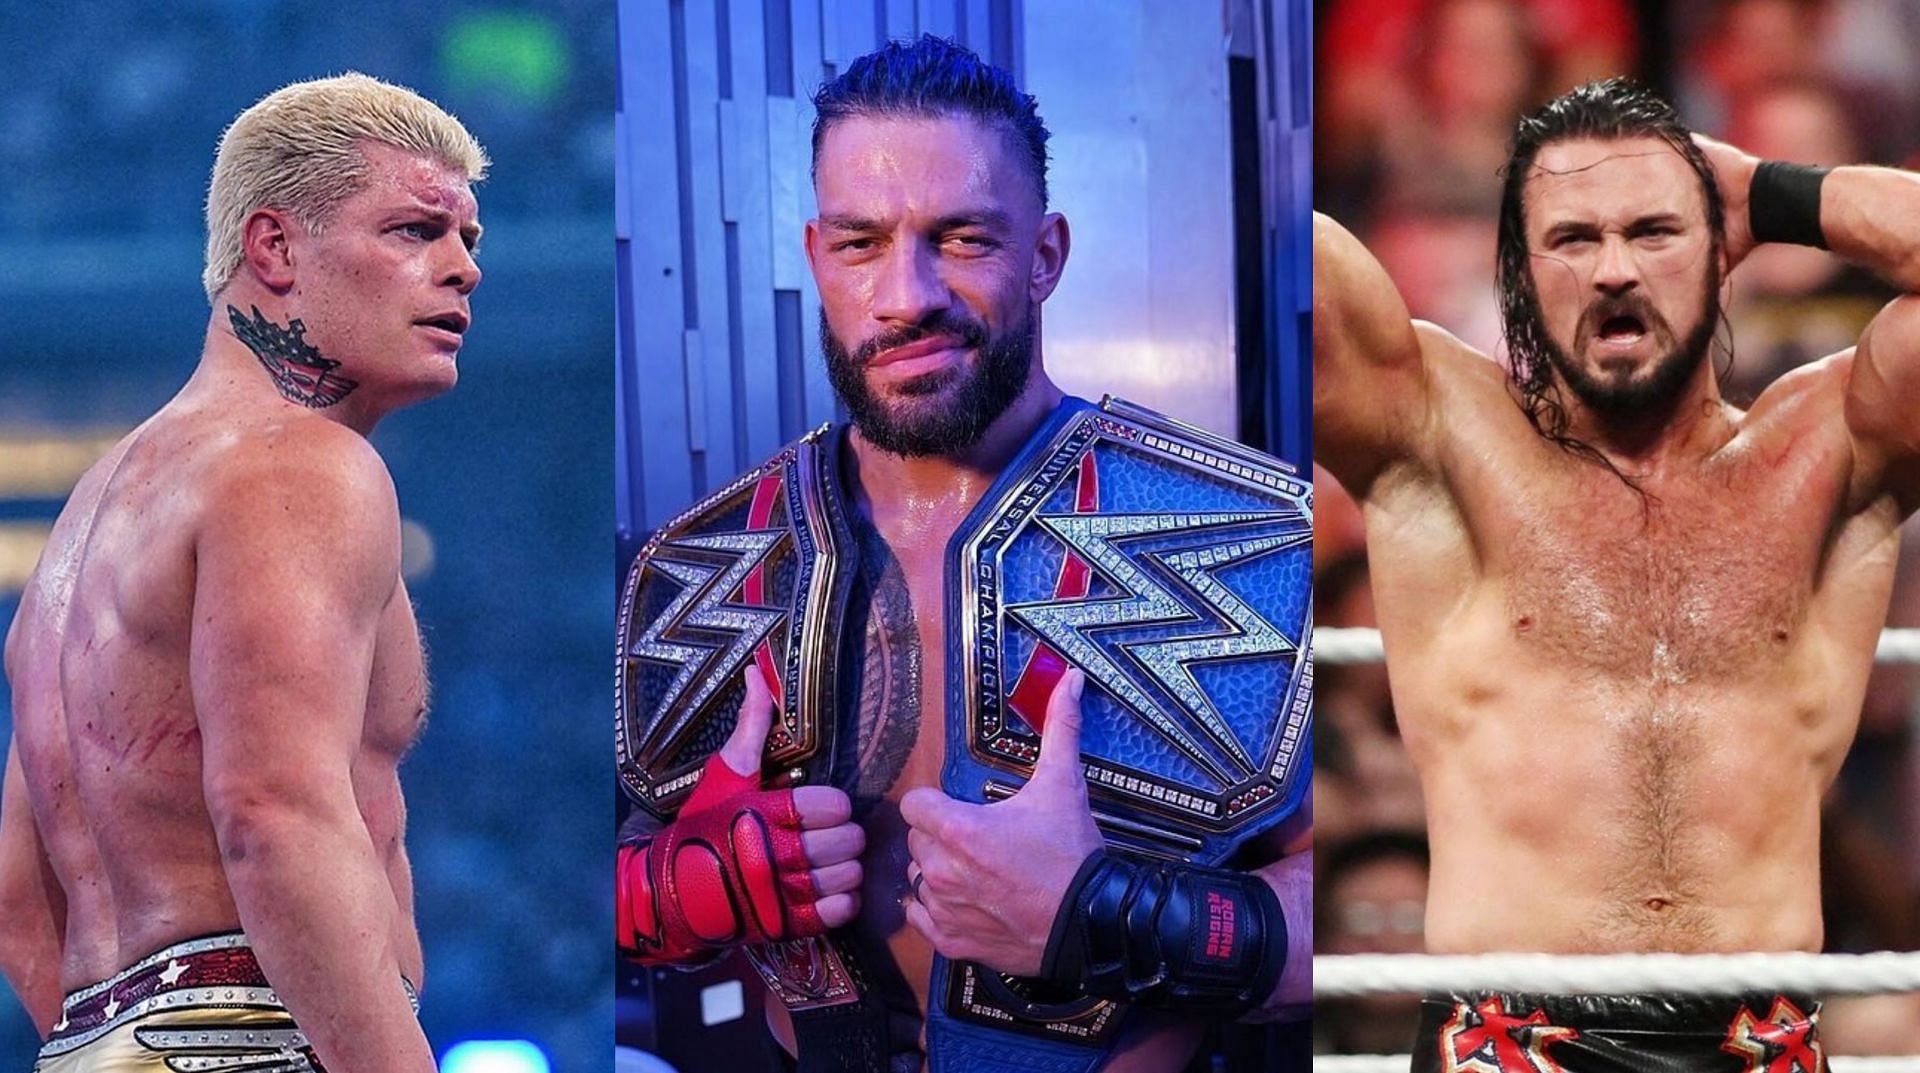 WWE SummerSlam में रोमन रेंस एक बड़ा मैच लड़ सकते हैं